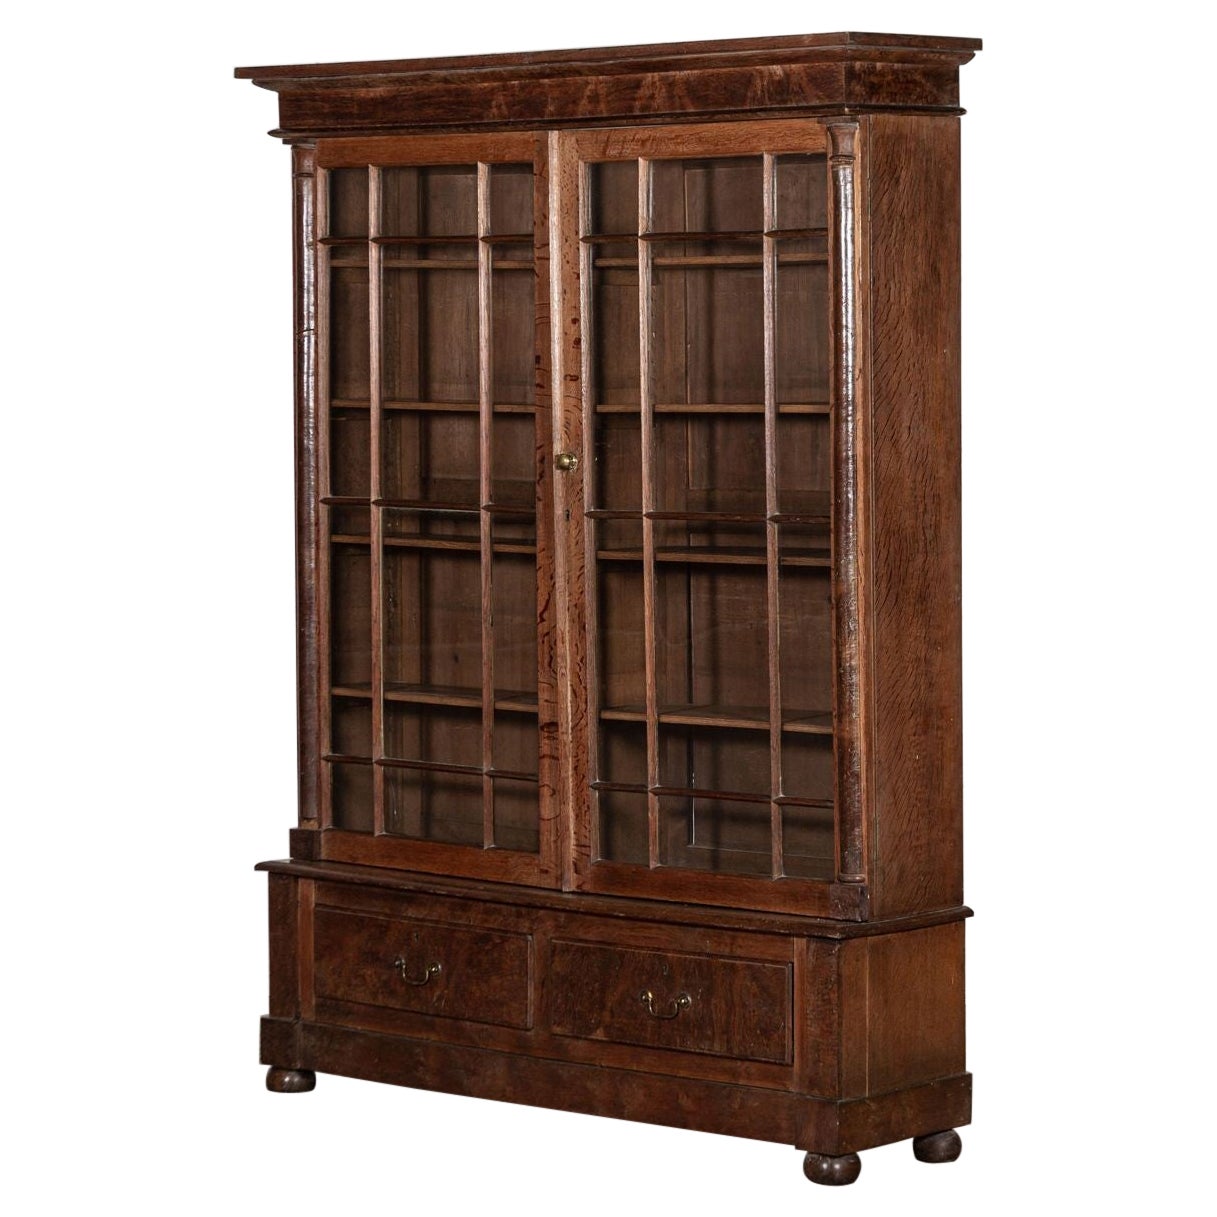 Large 19th Century Oak Glazed Bookcase Display Cabinet